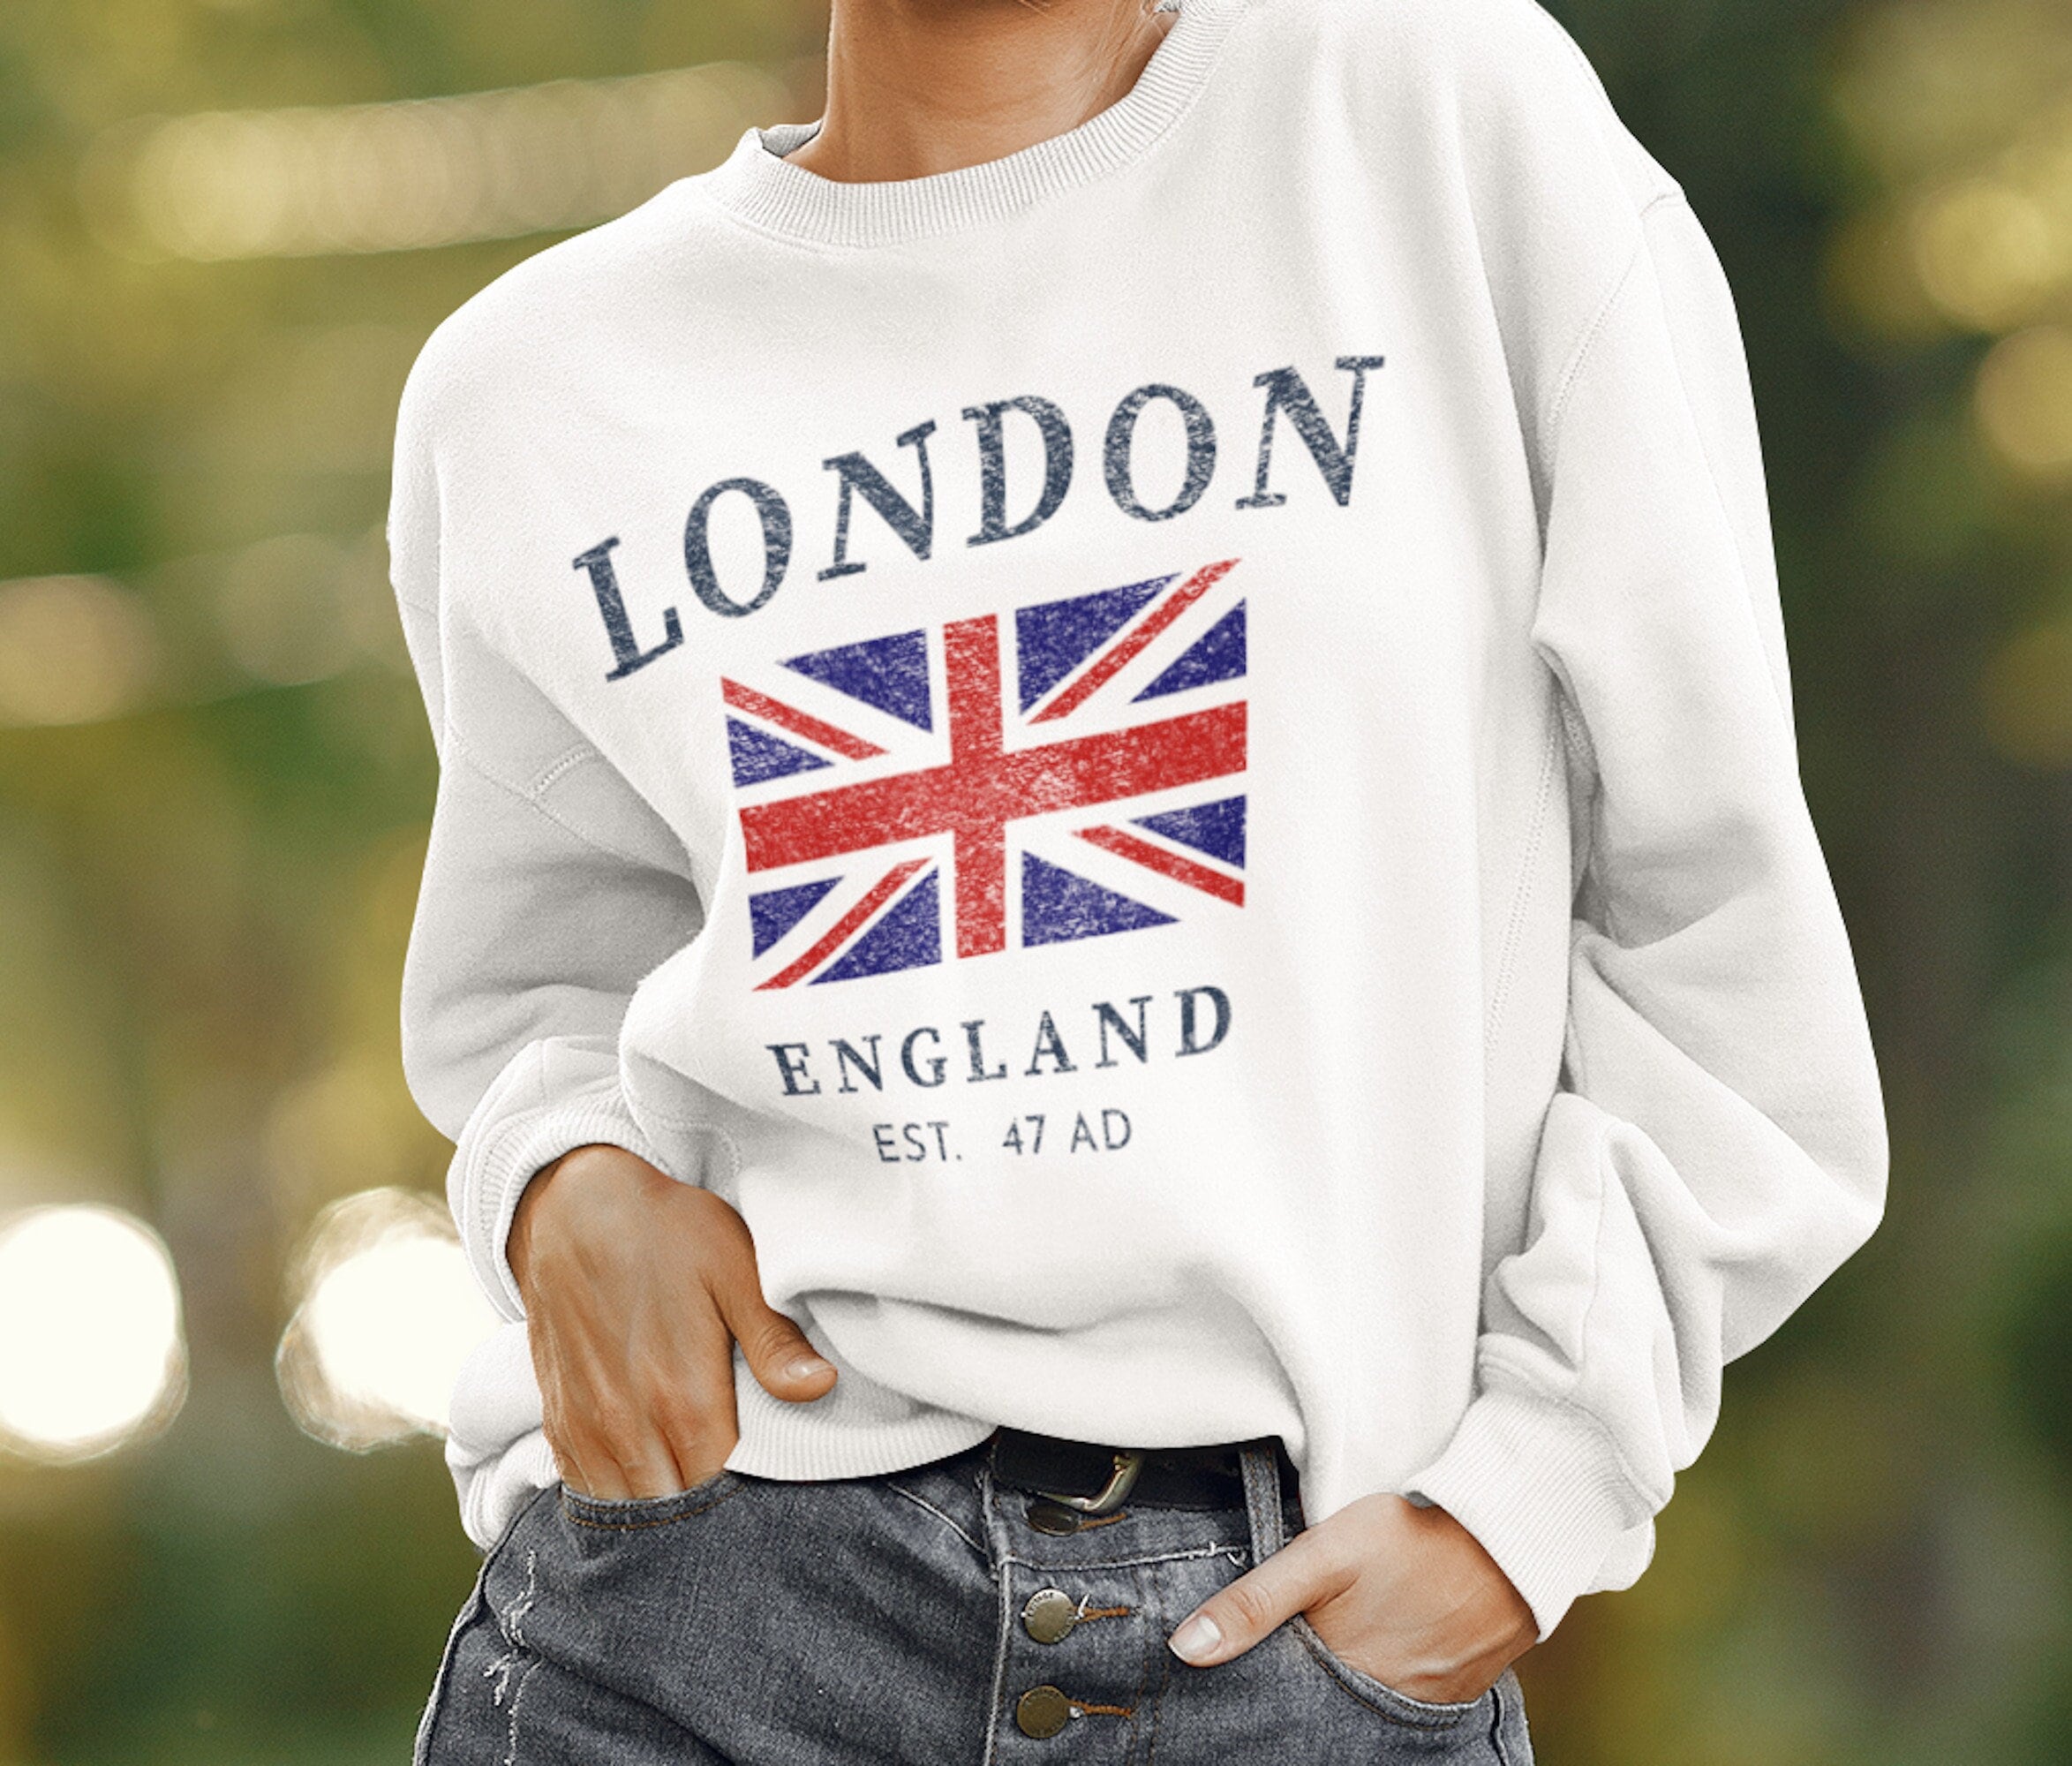 Sticker drapeau anglais decoupe london